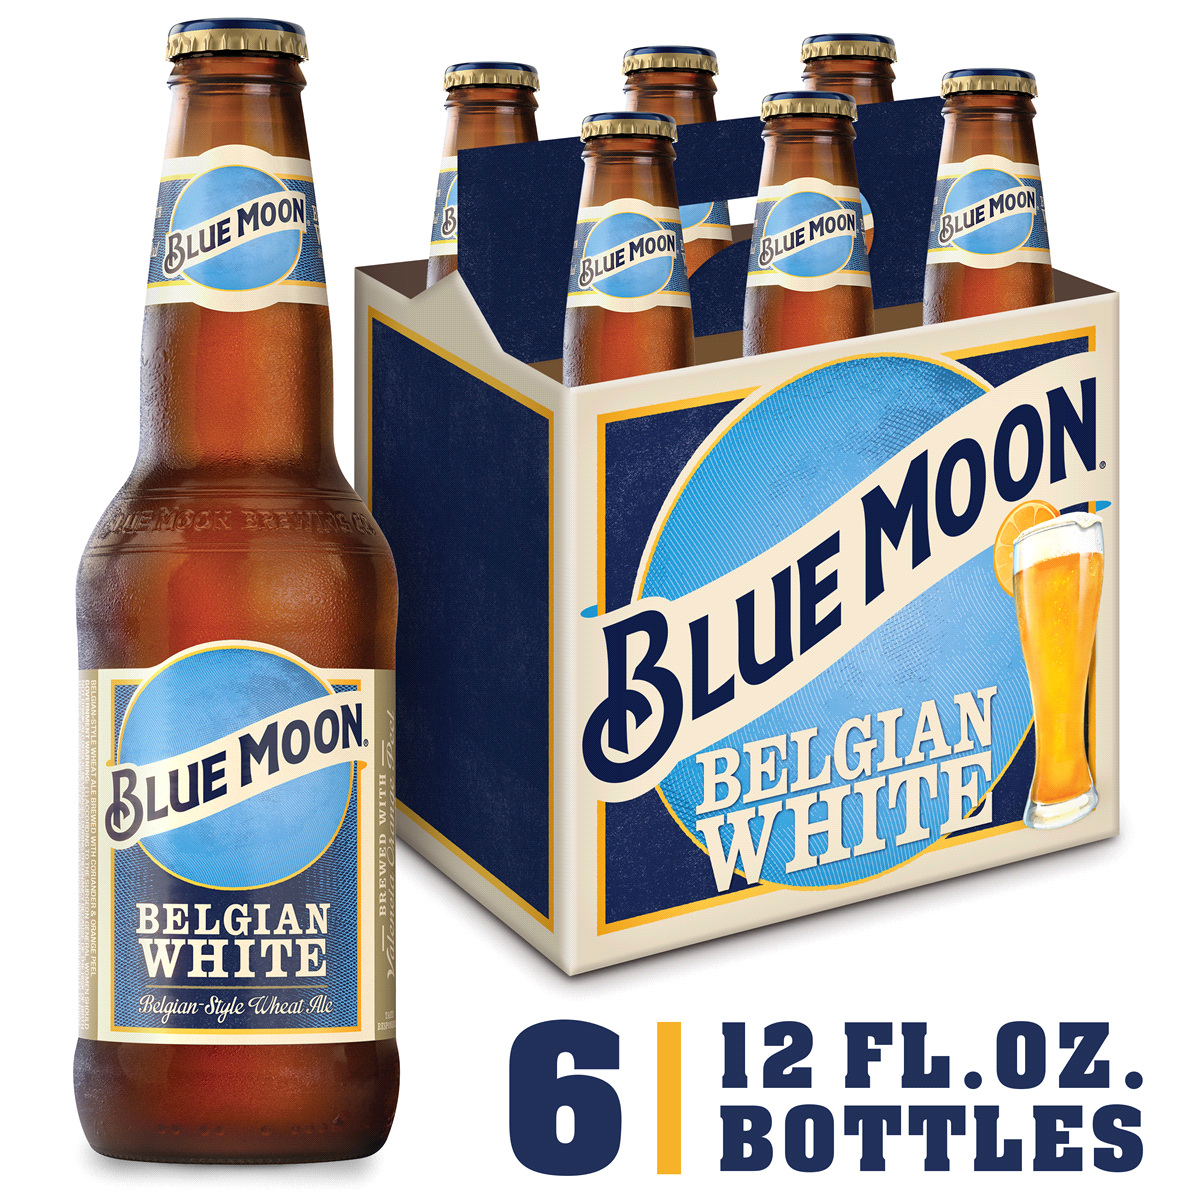 Пиво мун. Блю Мун пиво. Blue Moon Belgian White. Blue Moon Belgian White (Блю Мун бельгийское светлое). Голубое пиво.